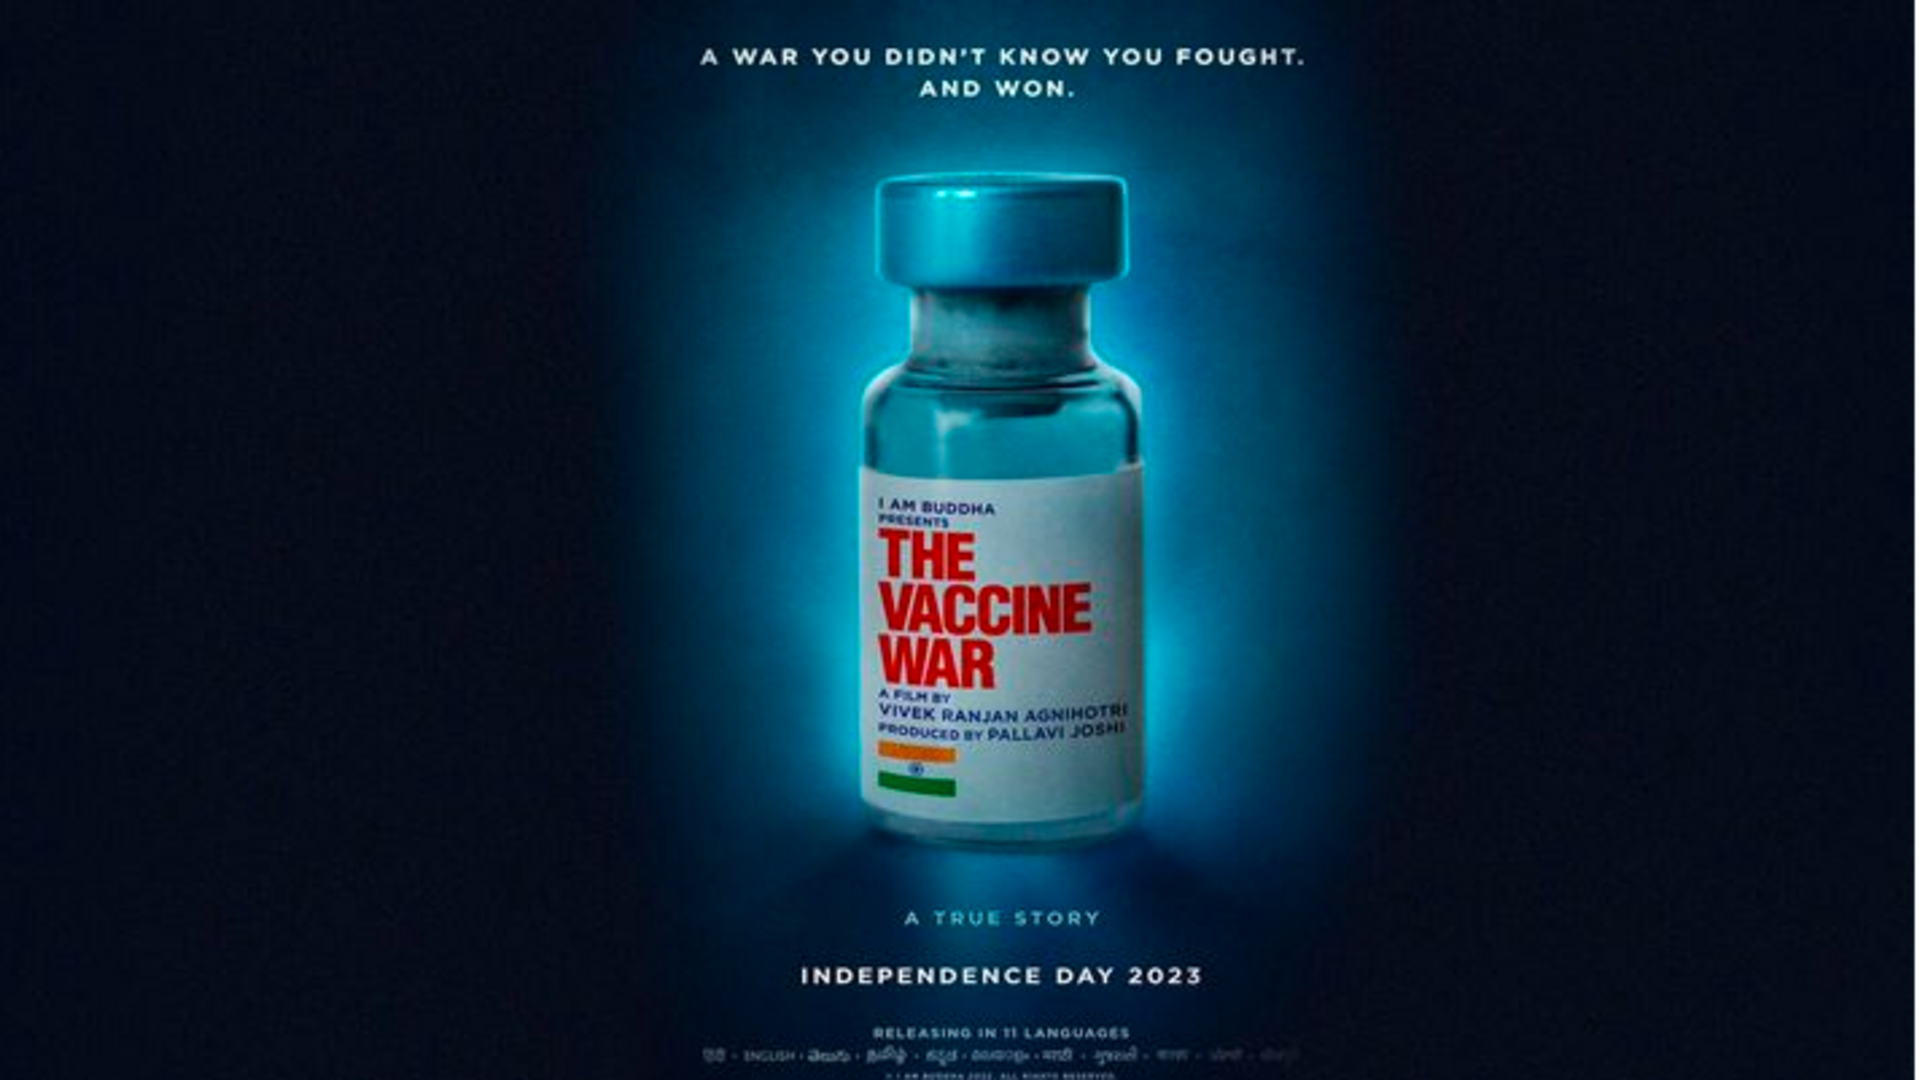 लॉस एंजिल्स में हुआ 'द वैक्सीन वॉर' का प्रीमियर, लोगों ने फिल्म को बताया बेहतरीन 